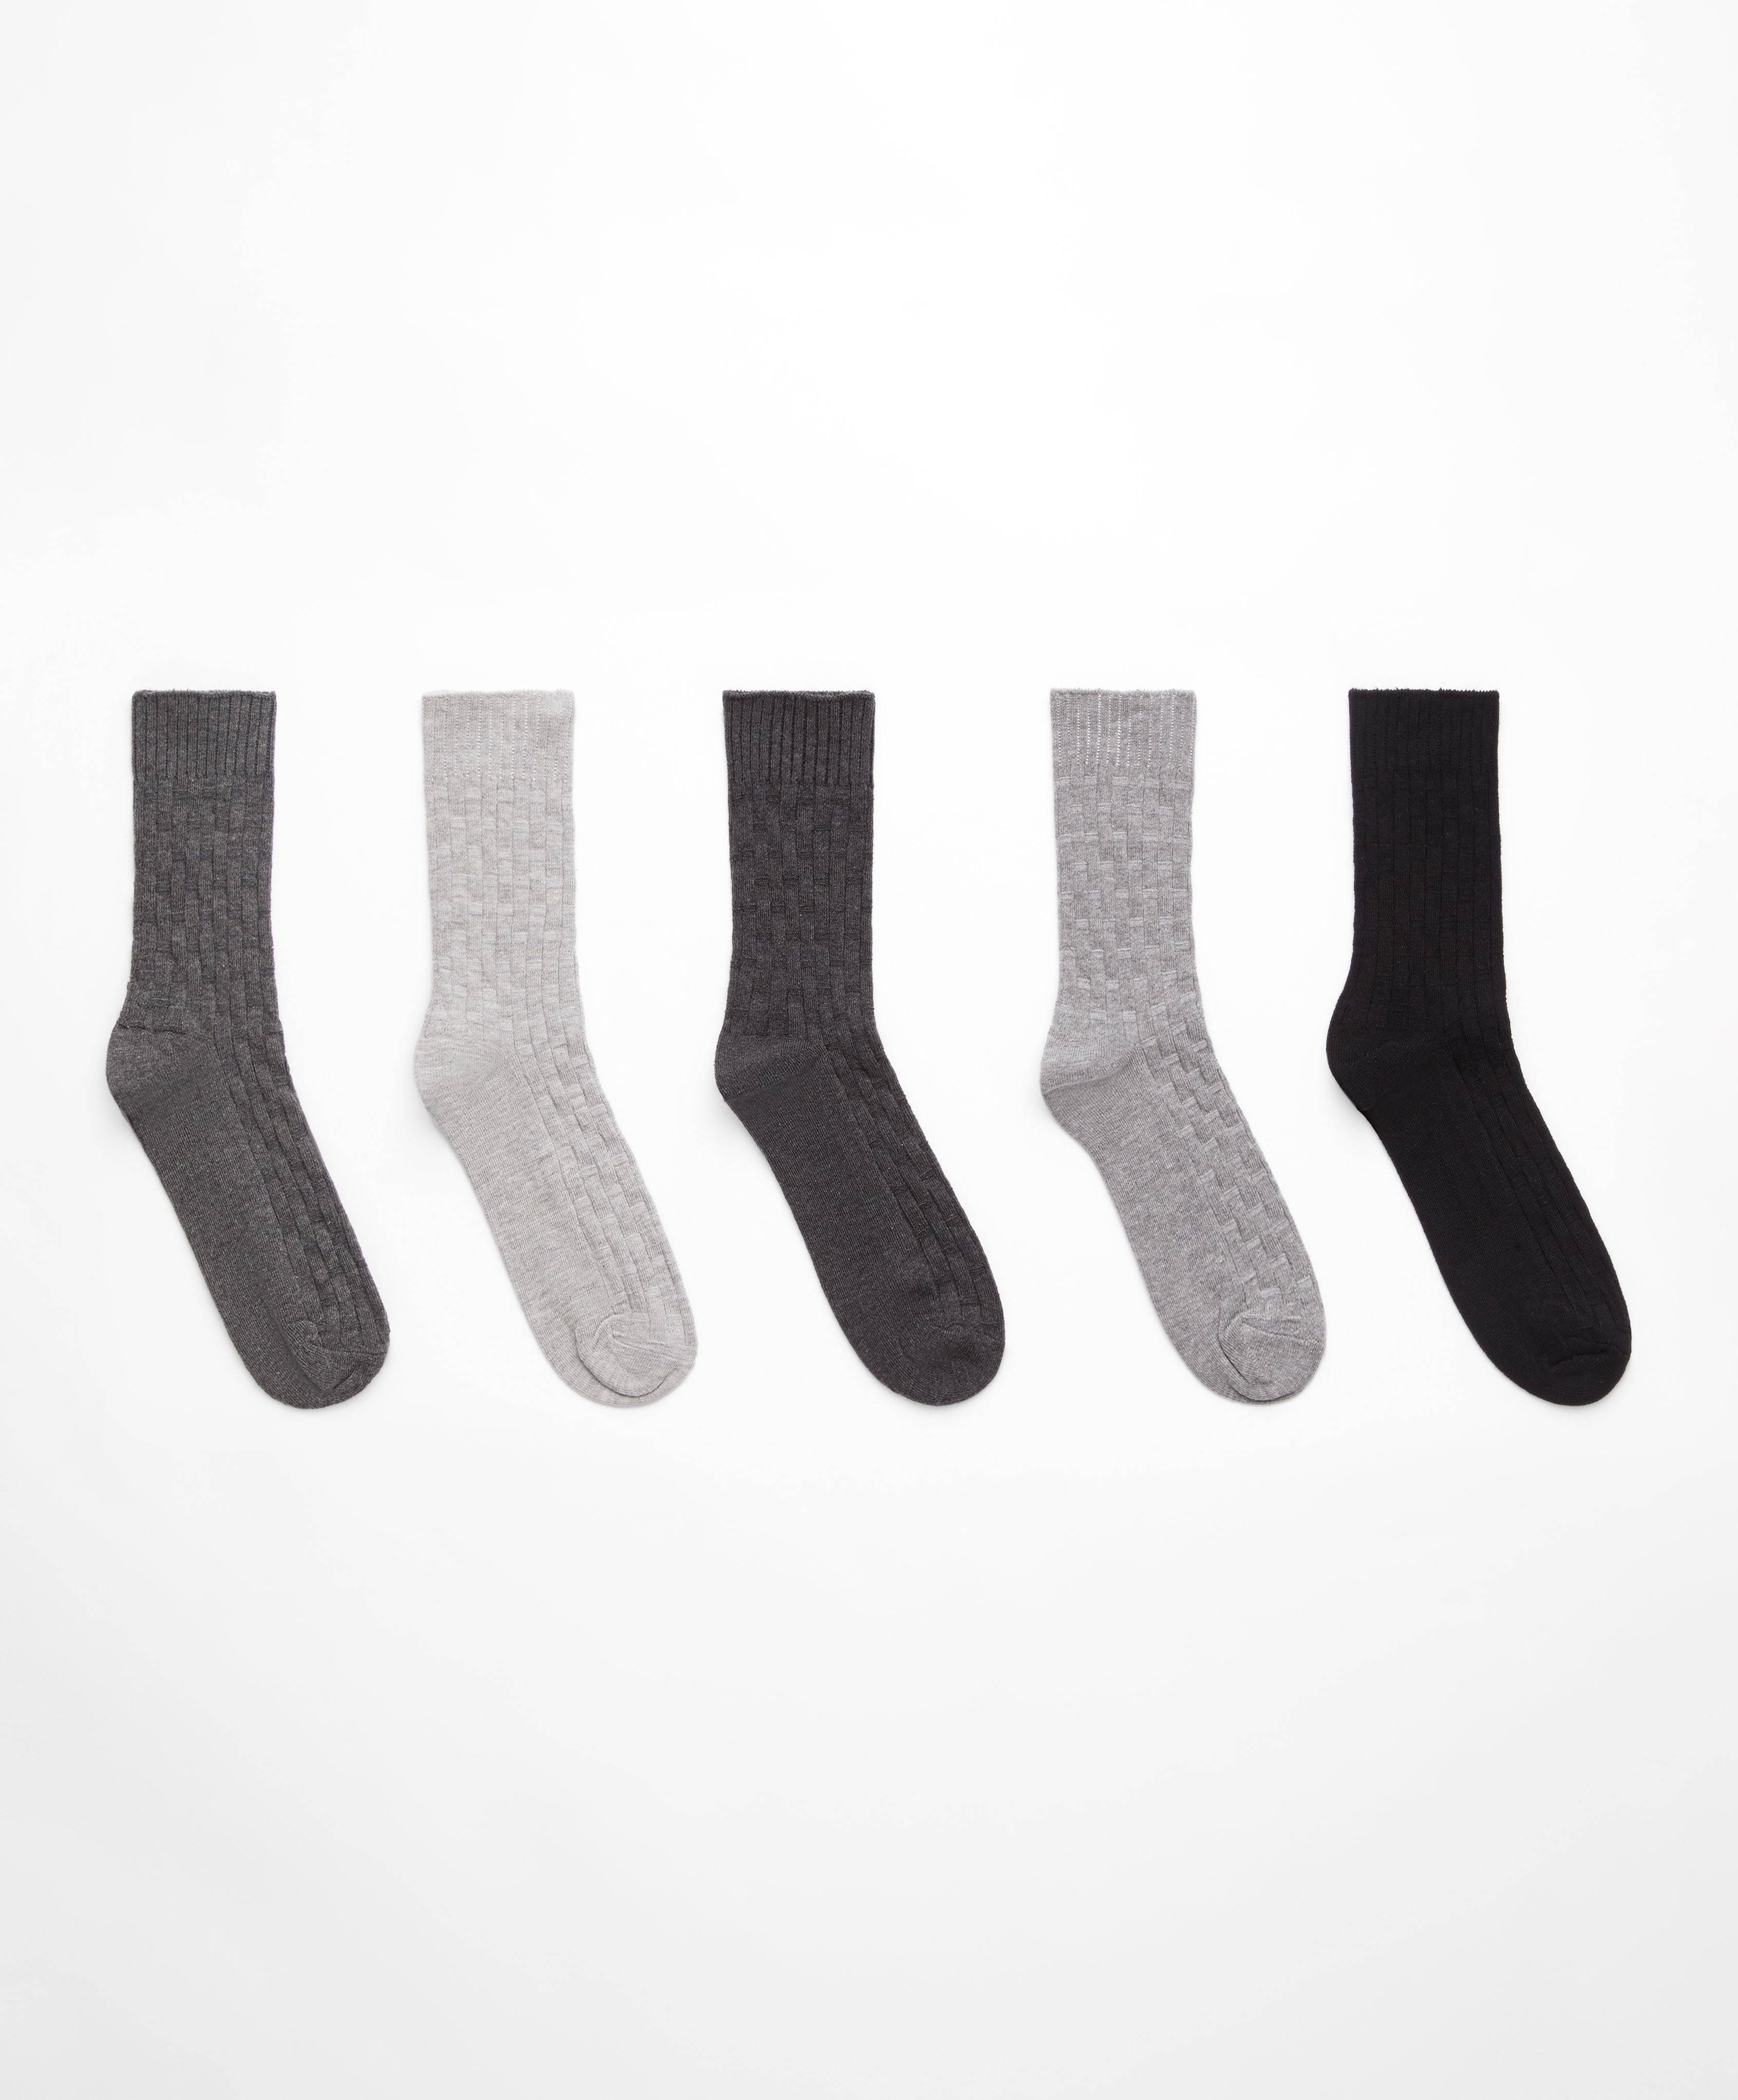 5 paires de chaussettes classic en coton texturé